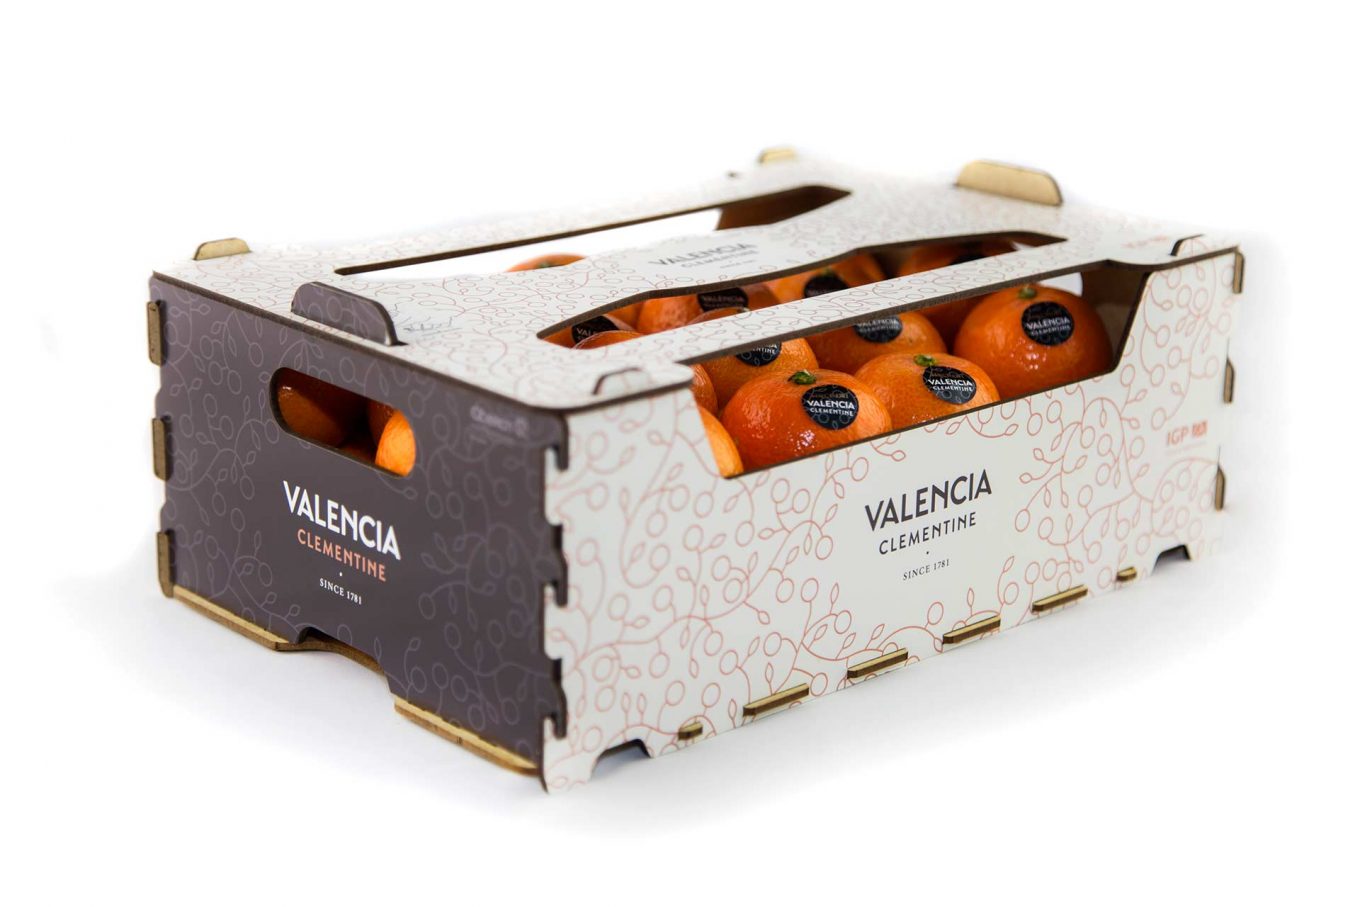 Fotografía de producto y caja de naranjas valencianas